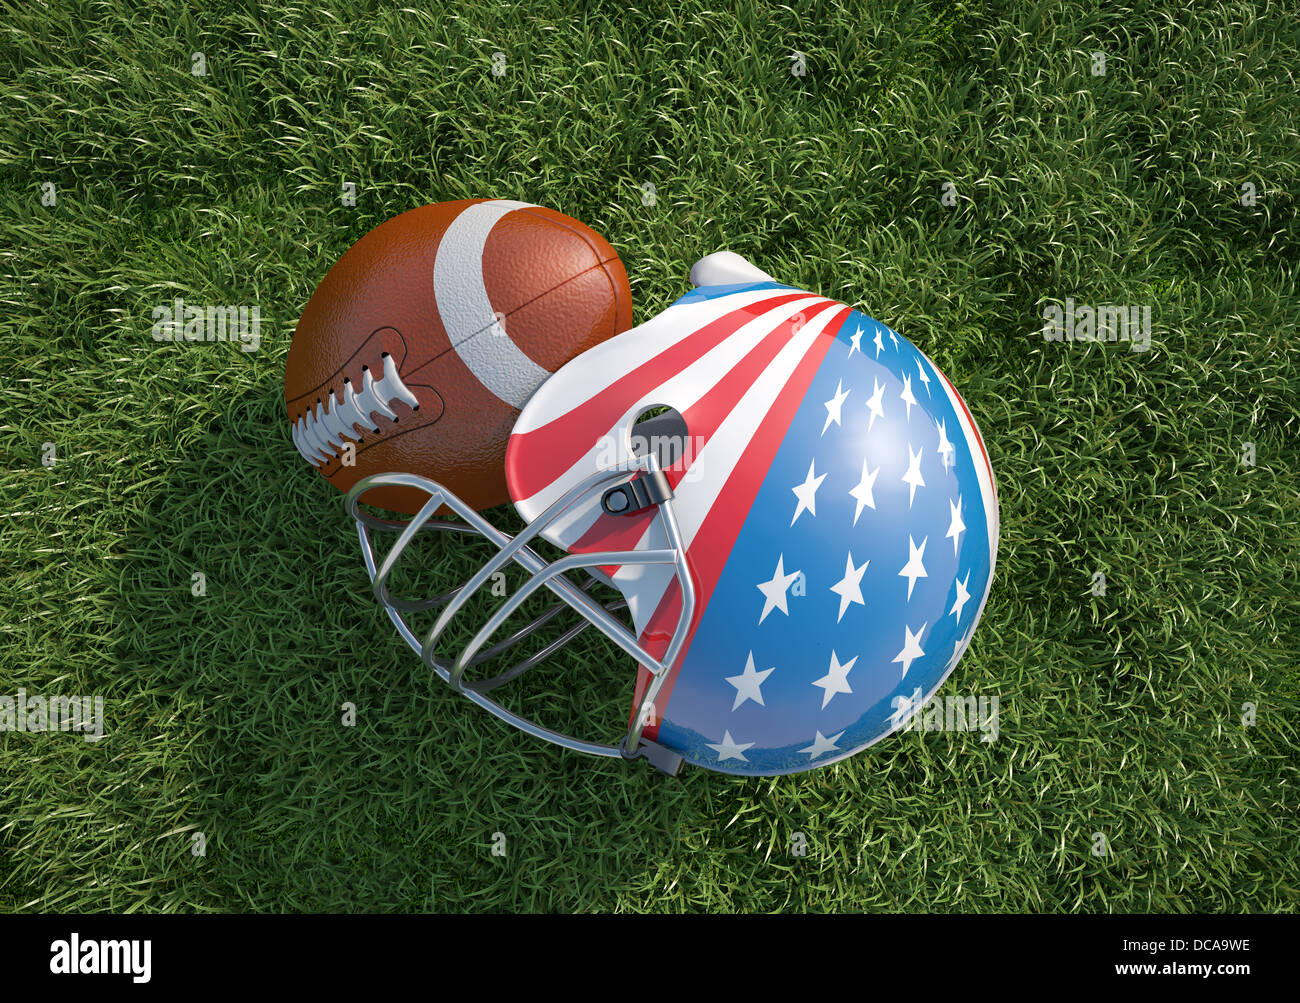 US-amerikanischer American-Football-Helm verziert als amerikanische Sternenbanner Flagge und Oval Ball, auf dem Rasen. Hautnah. Ansicht von oben. Stockfoto